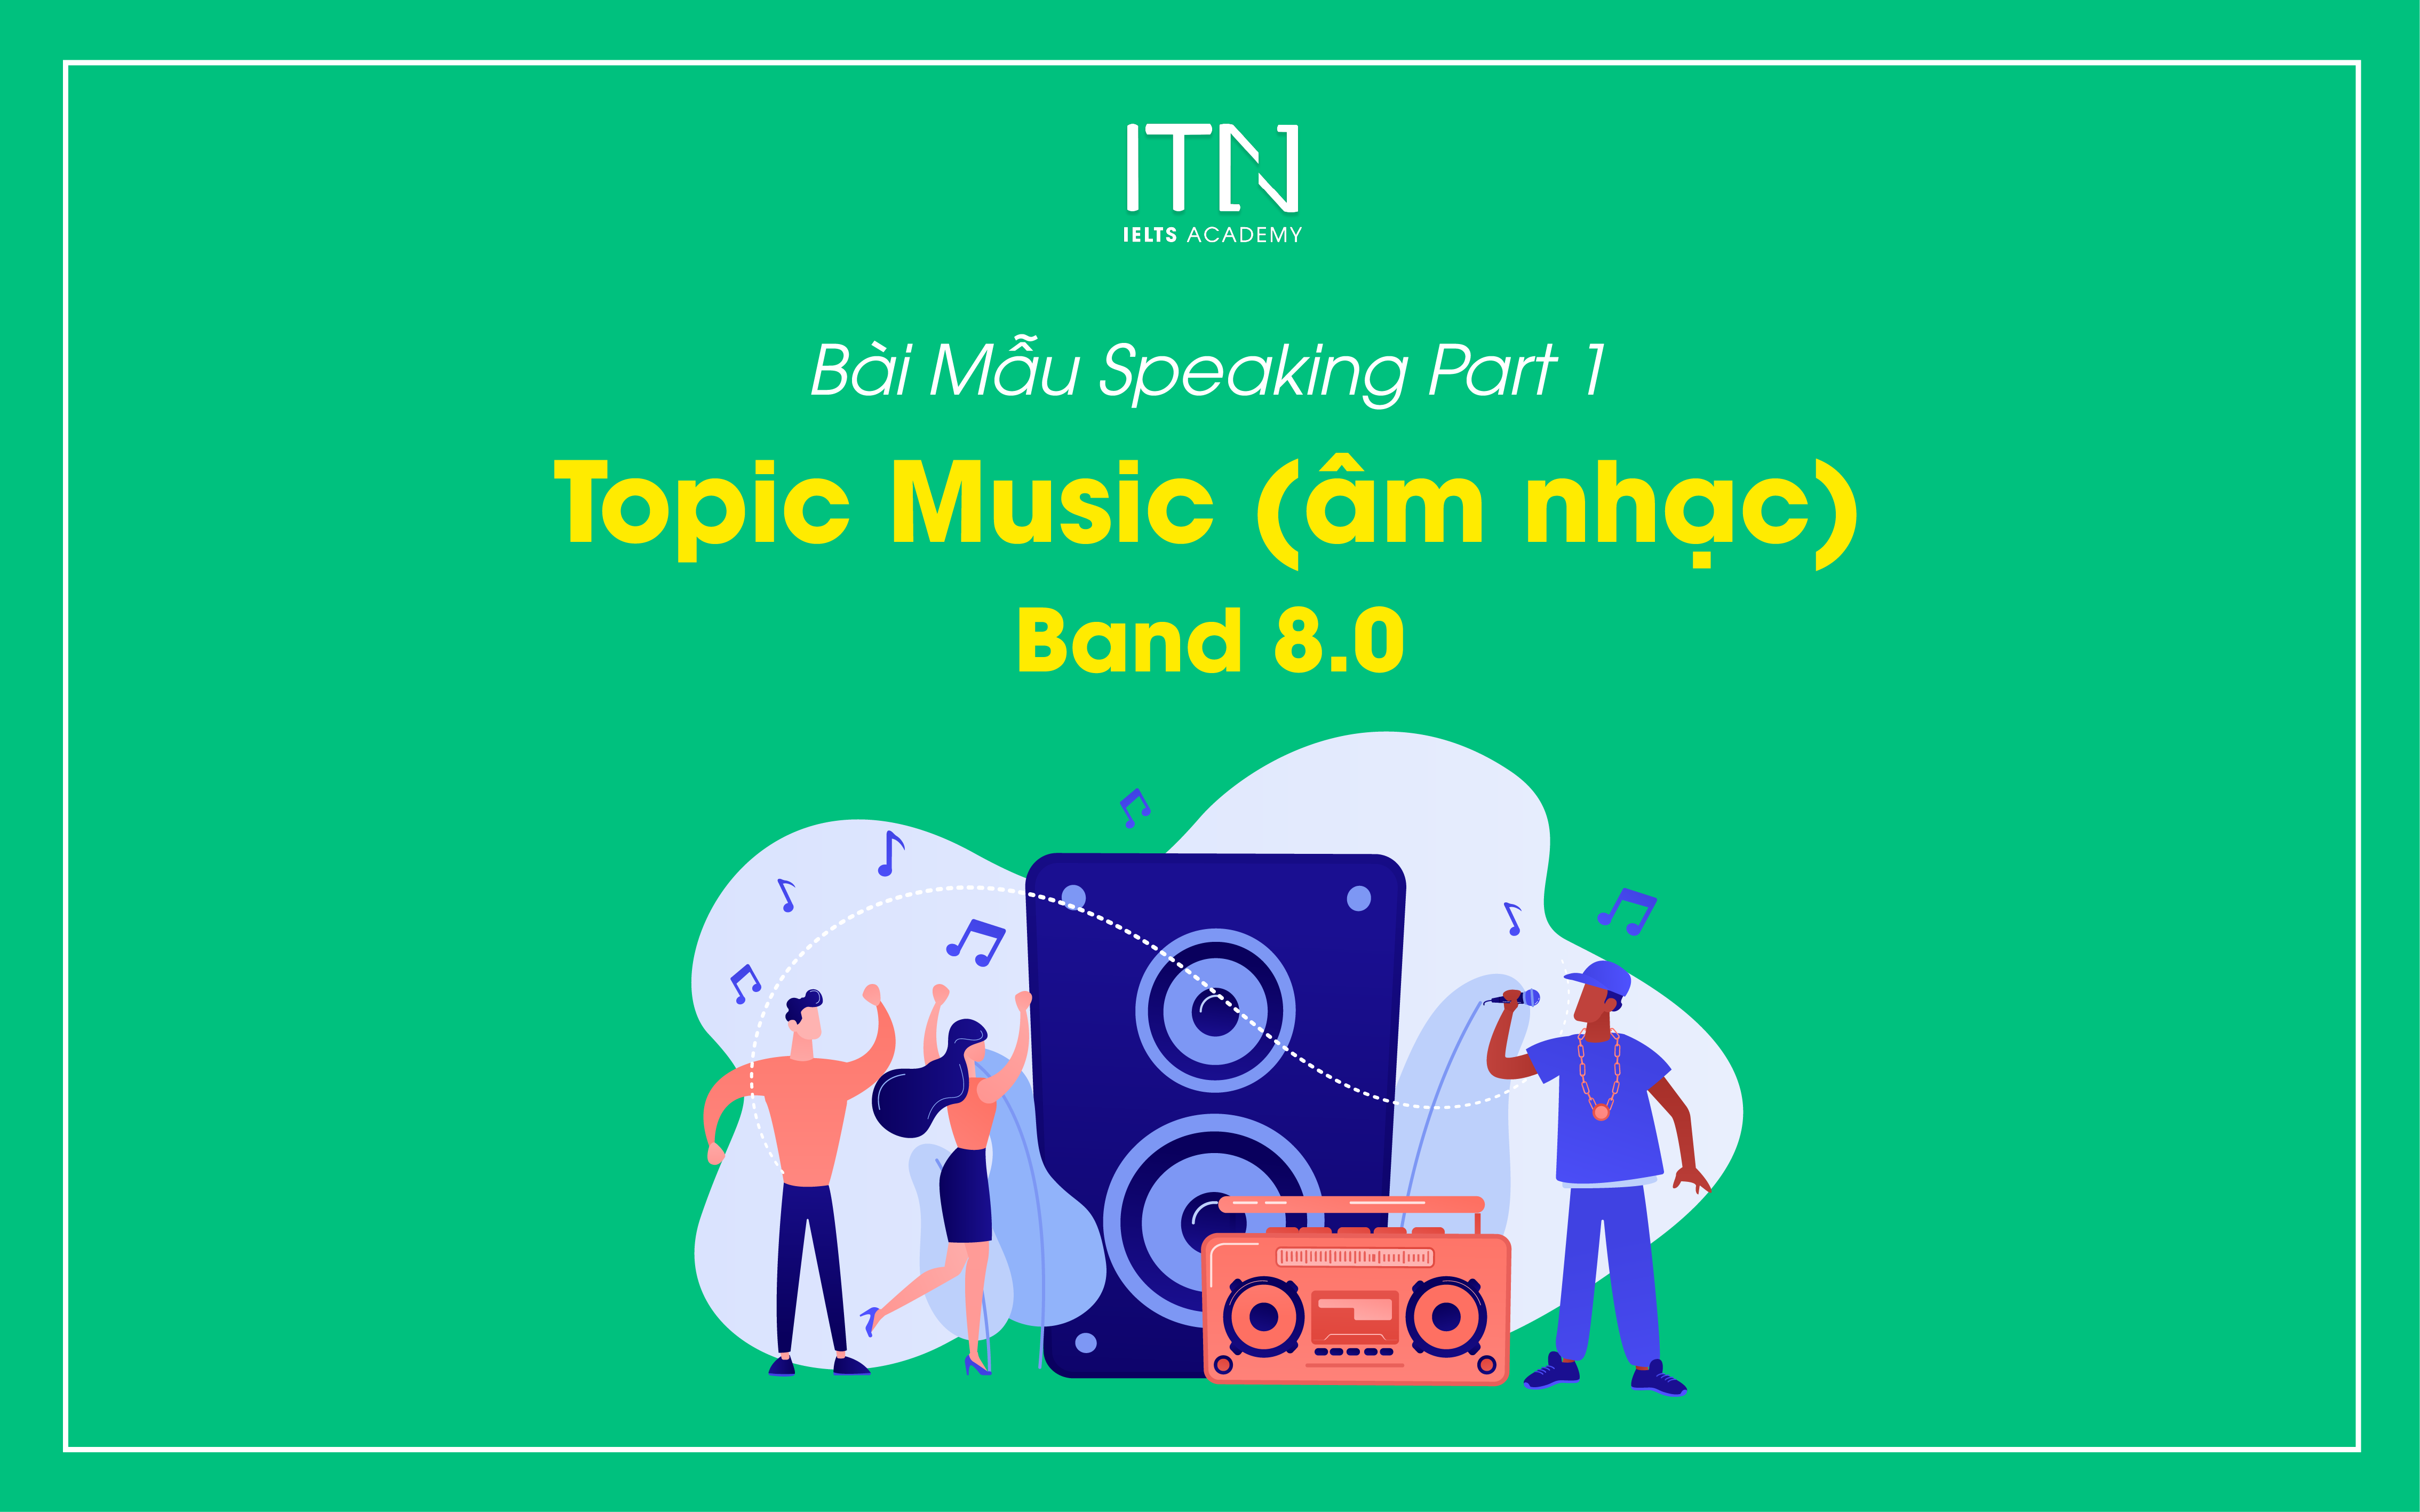 Topic Music (âm nhạc) Bài Mẫu Speaking Part 1 Band 8.0